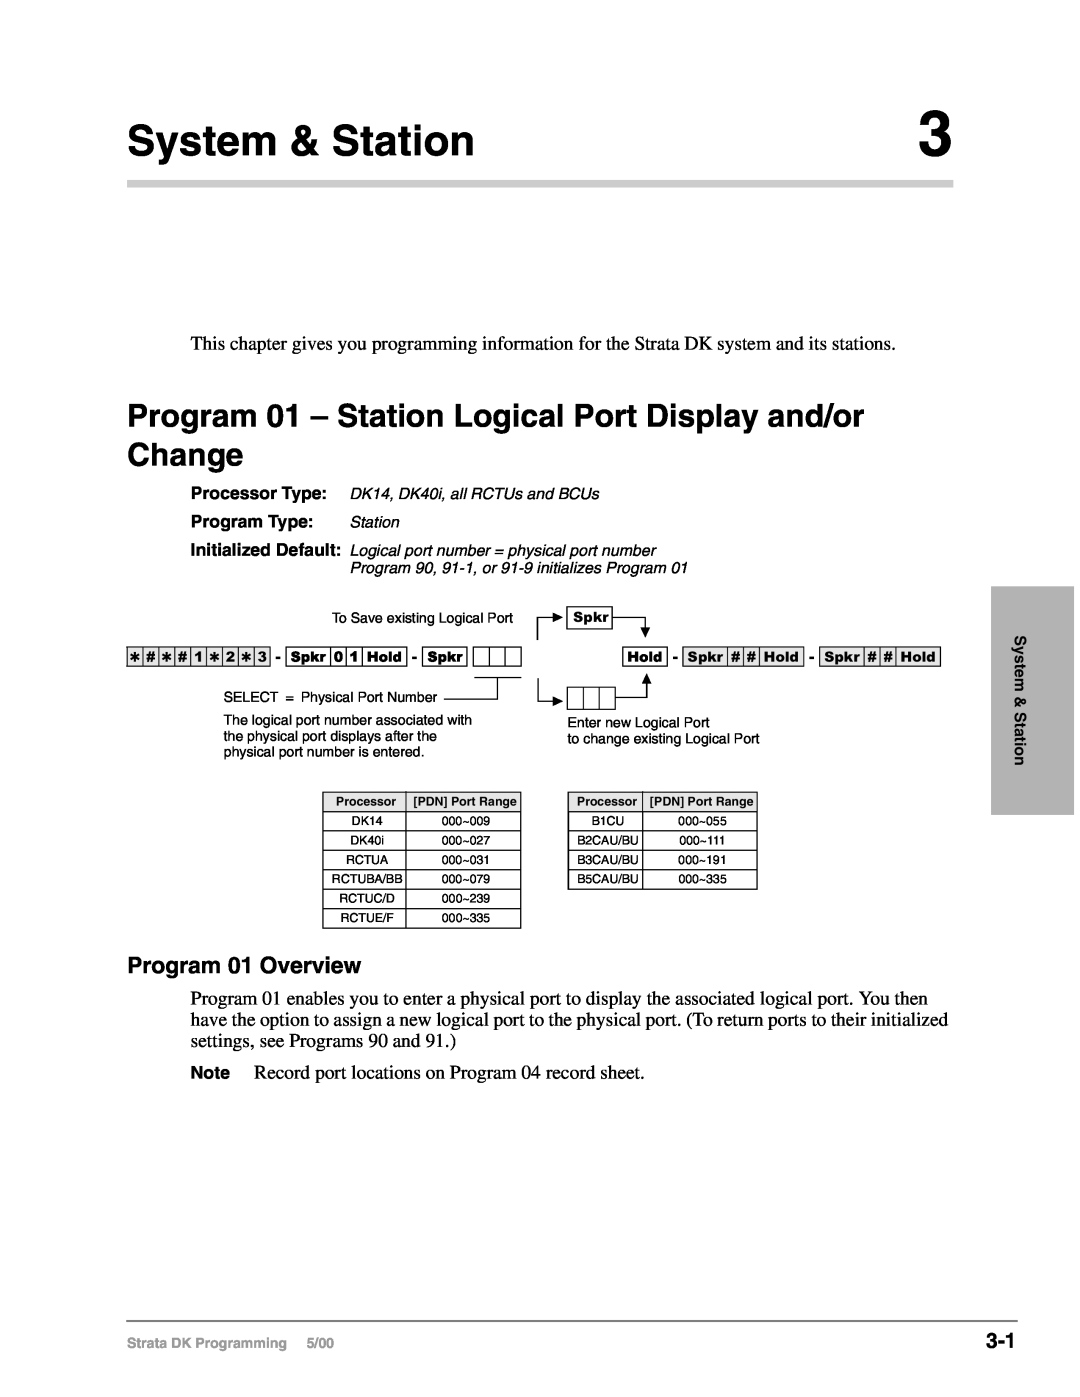 Toshiba dk14, DK40I, DK424I manual System & Station, Program 01 Overview 